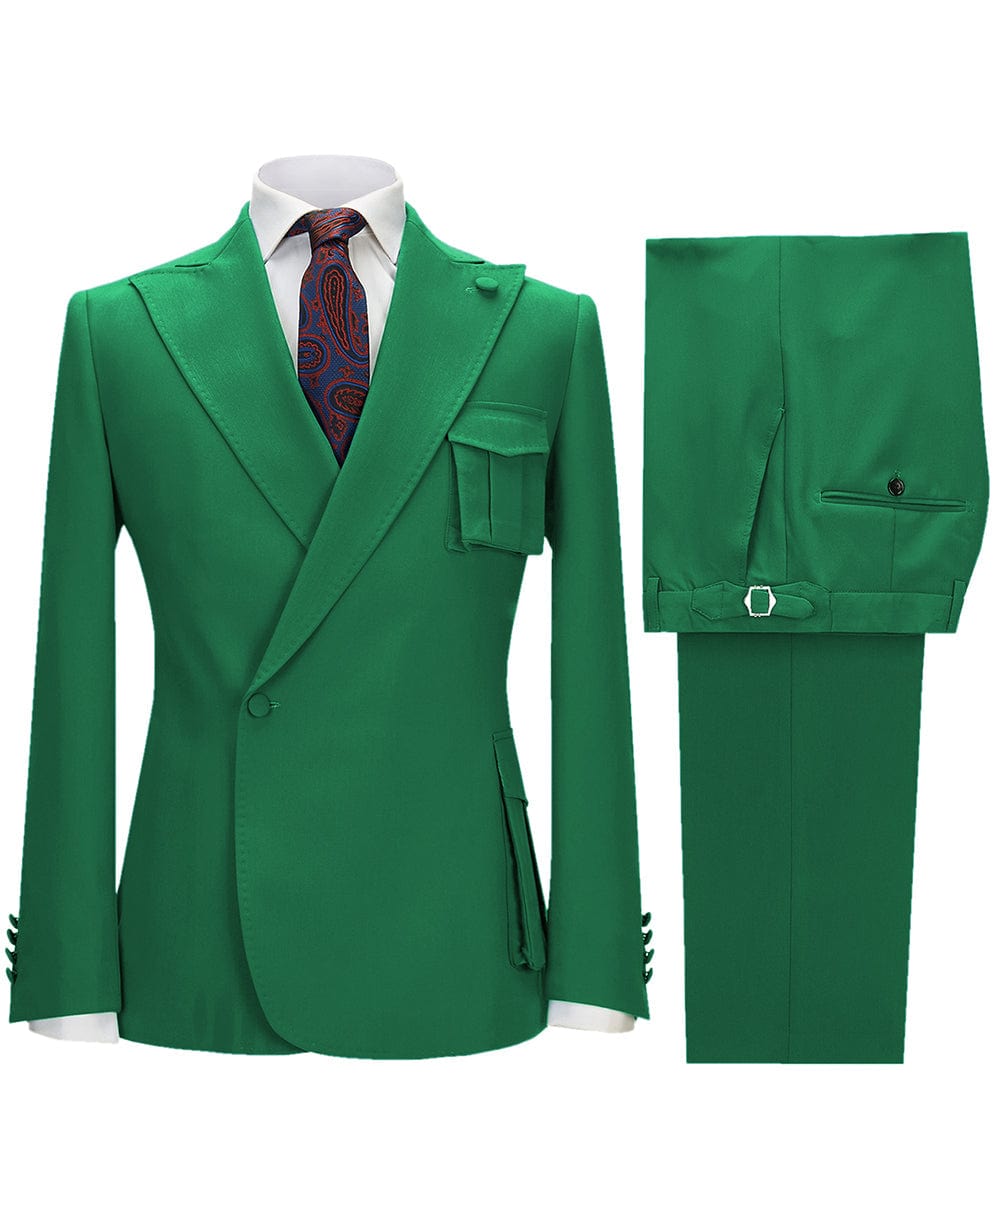 aesido 2 Pieces Single Button Peak Lapel Men Suit (Blazer+Pants）